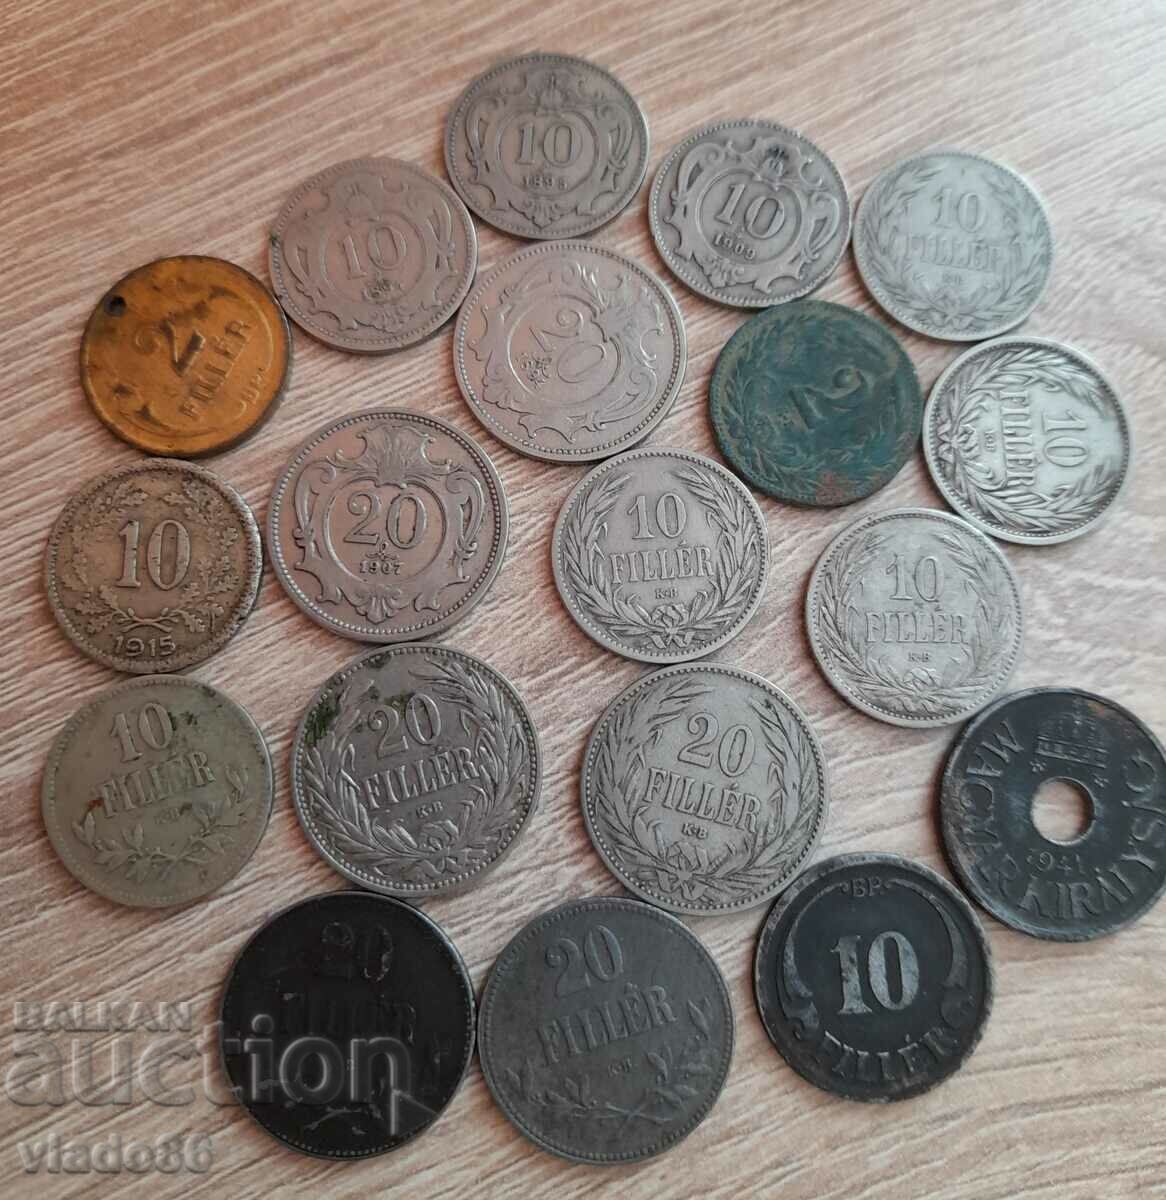 Πολλά παλιά αυστριακά και ουγγρικά μη επαναλαμβανόμενα νομίσματα